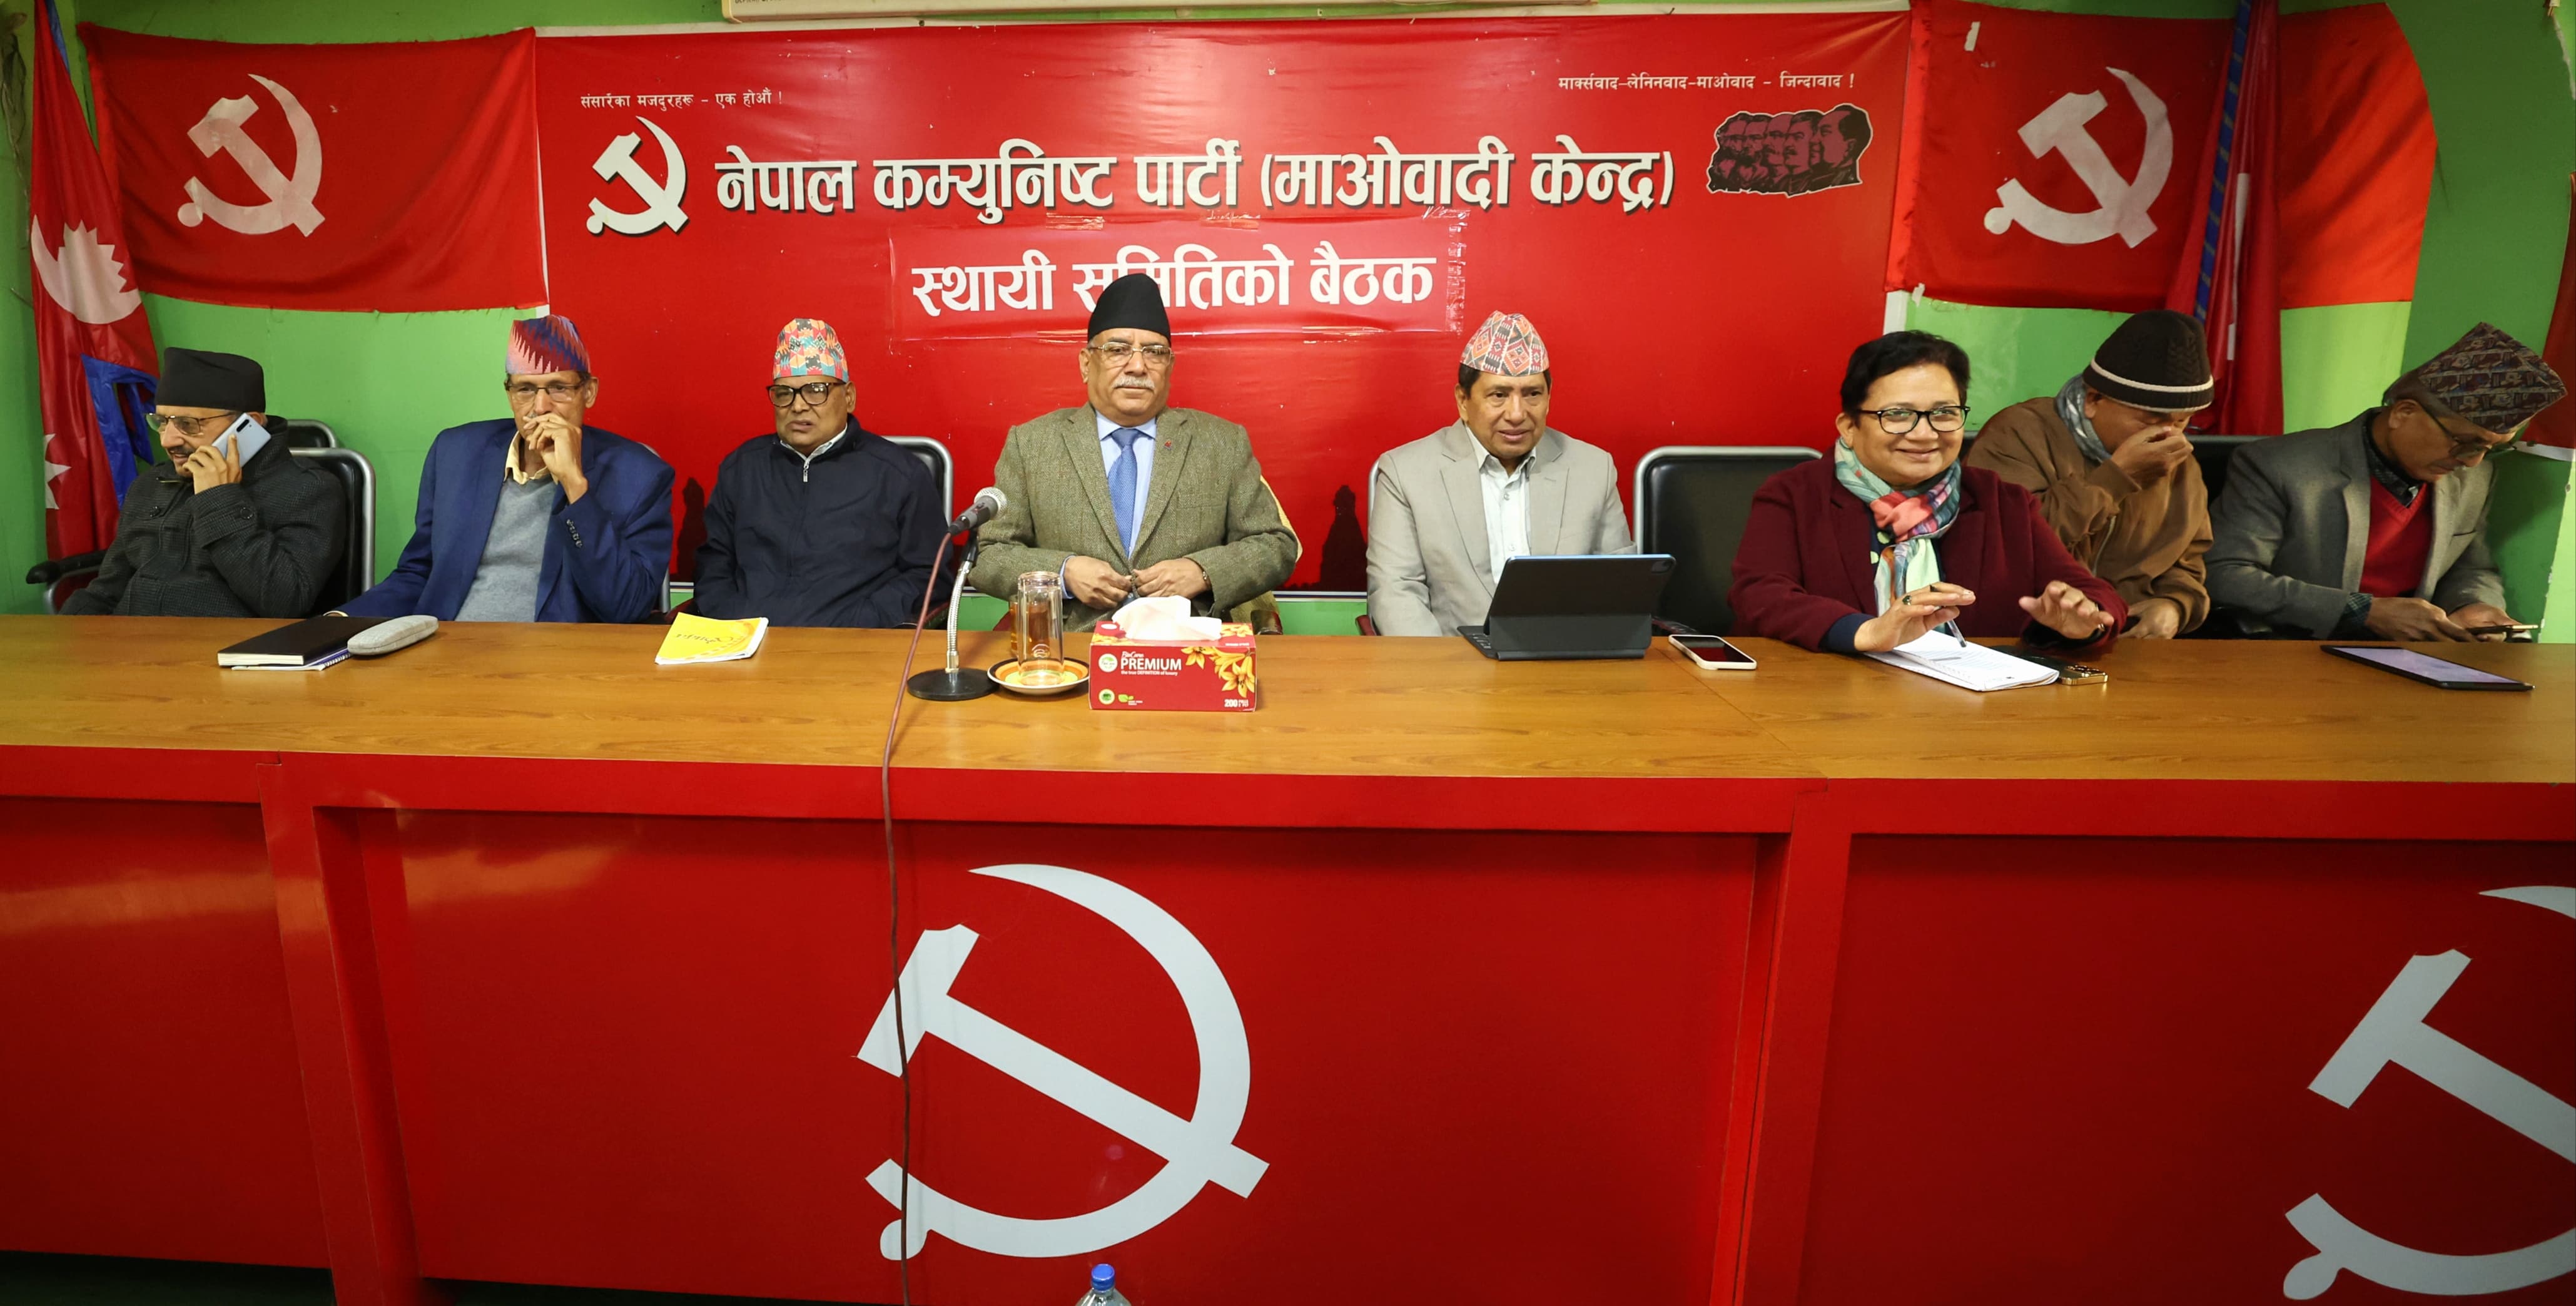 माओवादी केन्द्रको स्थायी समिति बैठक बस्दै, नेताहरूको जिम्मेवारी हेरफेर गरिँदै